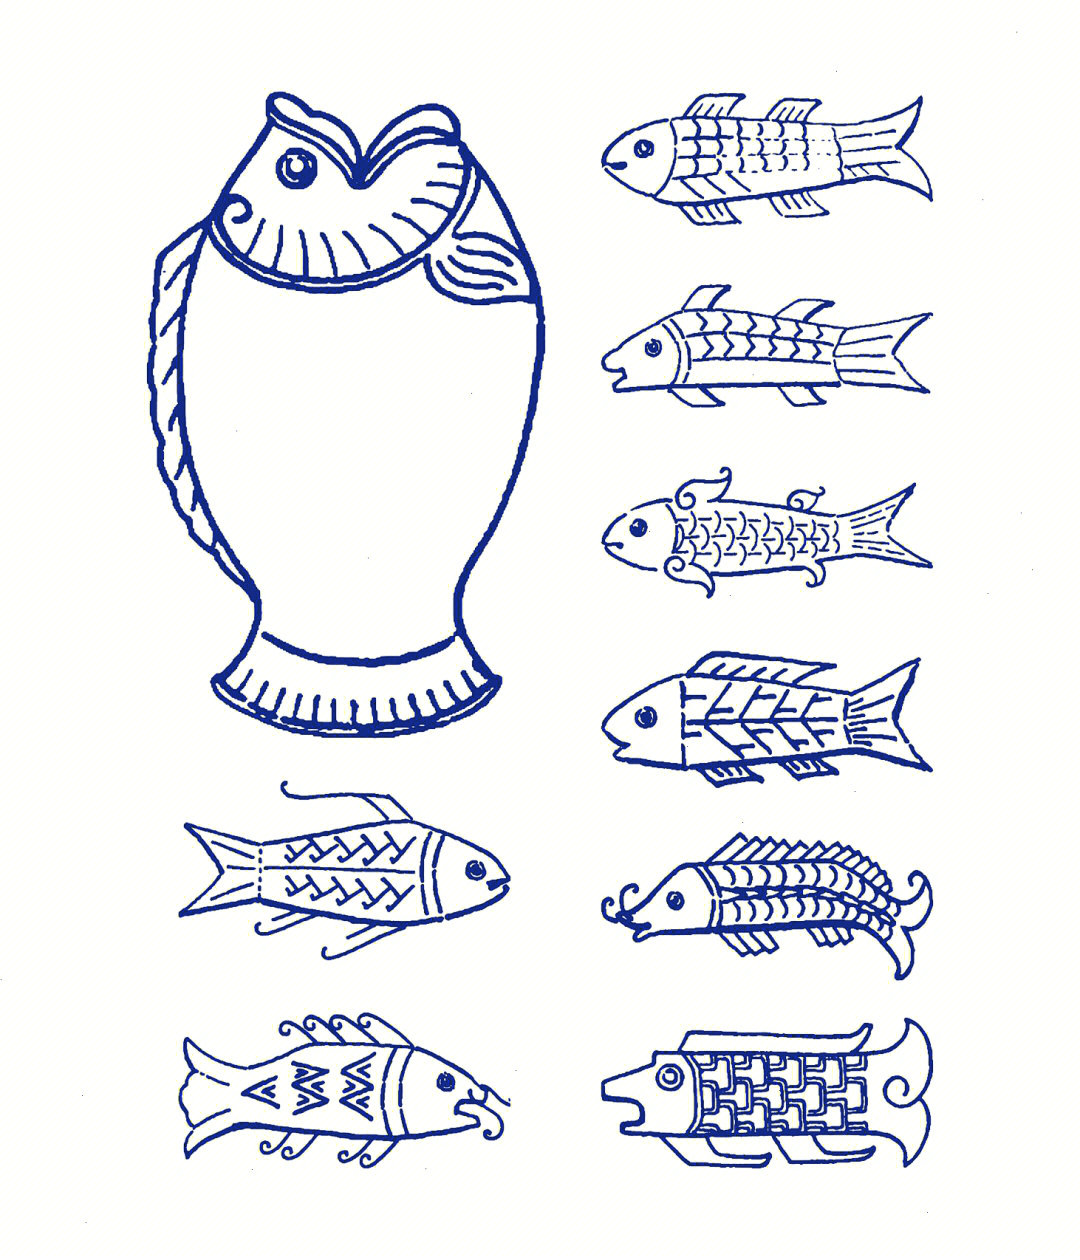 鱼纹是中国传统寓意纹样,图案表现为鱼的形态,鱼纹常饰于盘内,反映